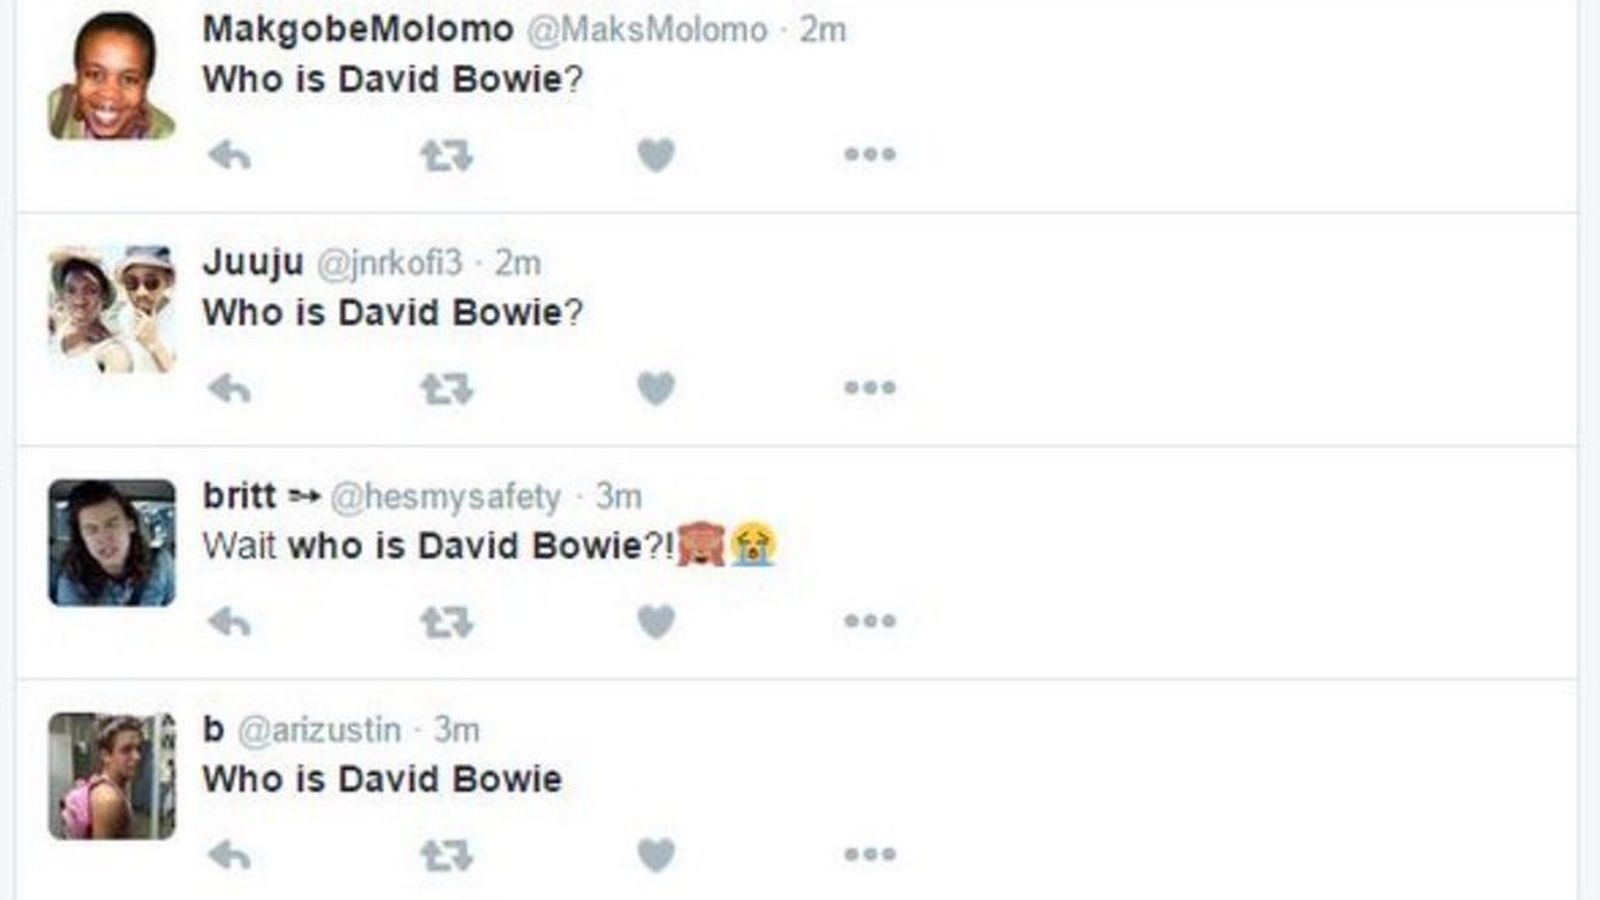 Foto: Captura de pantalla de las preguntas de algunos usuarios sobre quién es David Bowie